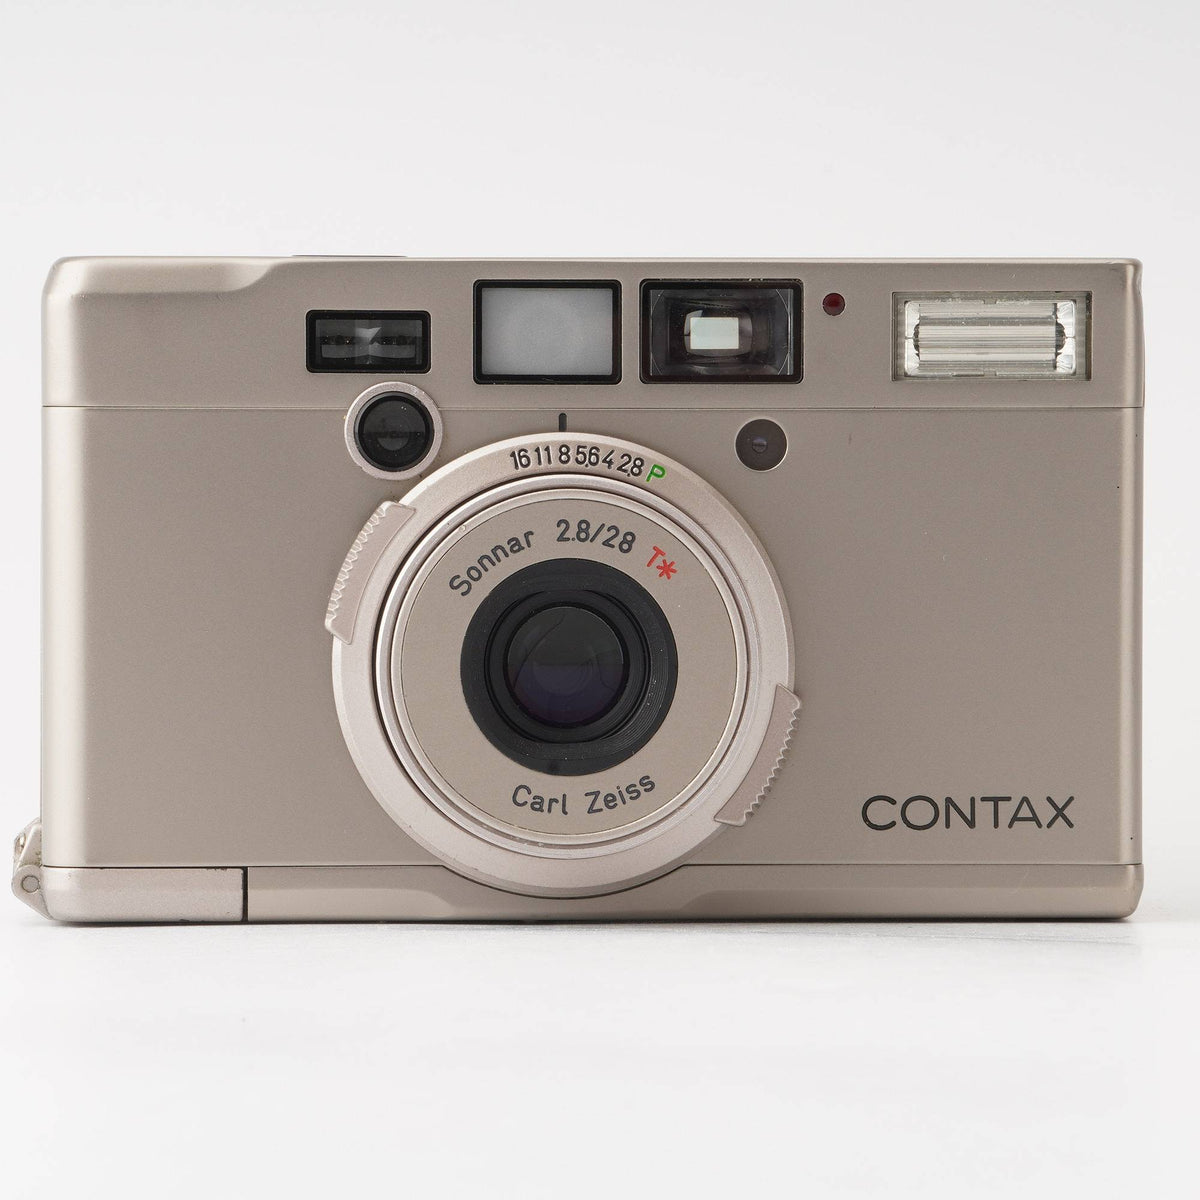 CONTAX Tix Sonnar 28mm F2.8 カールツァイス APS - フィルムカメラ